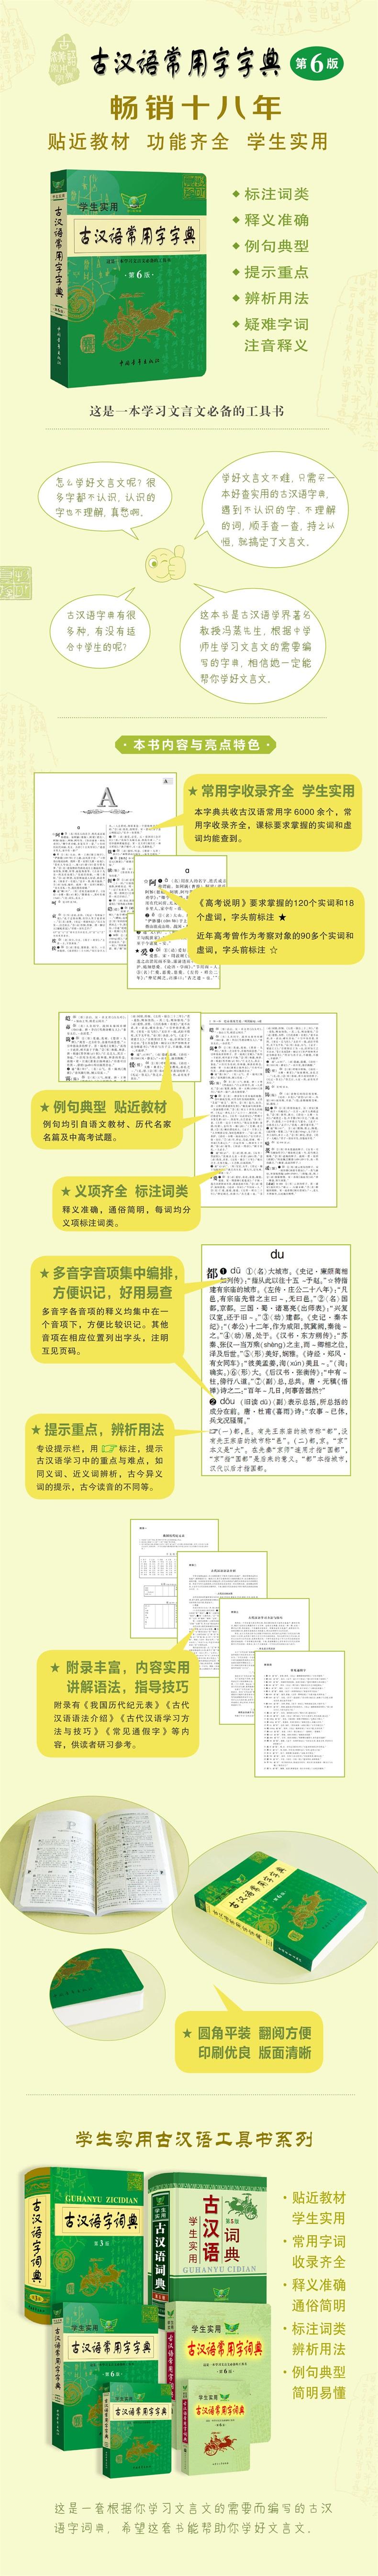 古汉语常用字字典第6版 第六版 古代汉语 摘要书评试读 京东图书